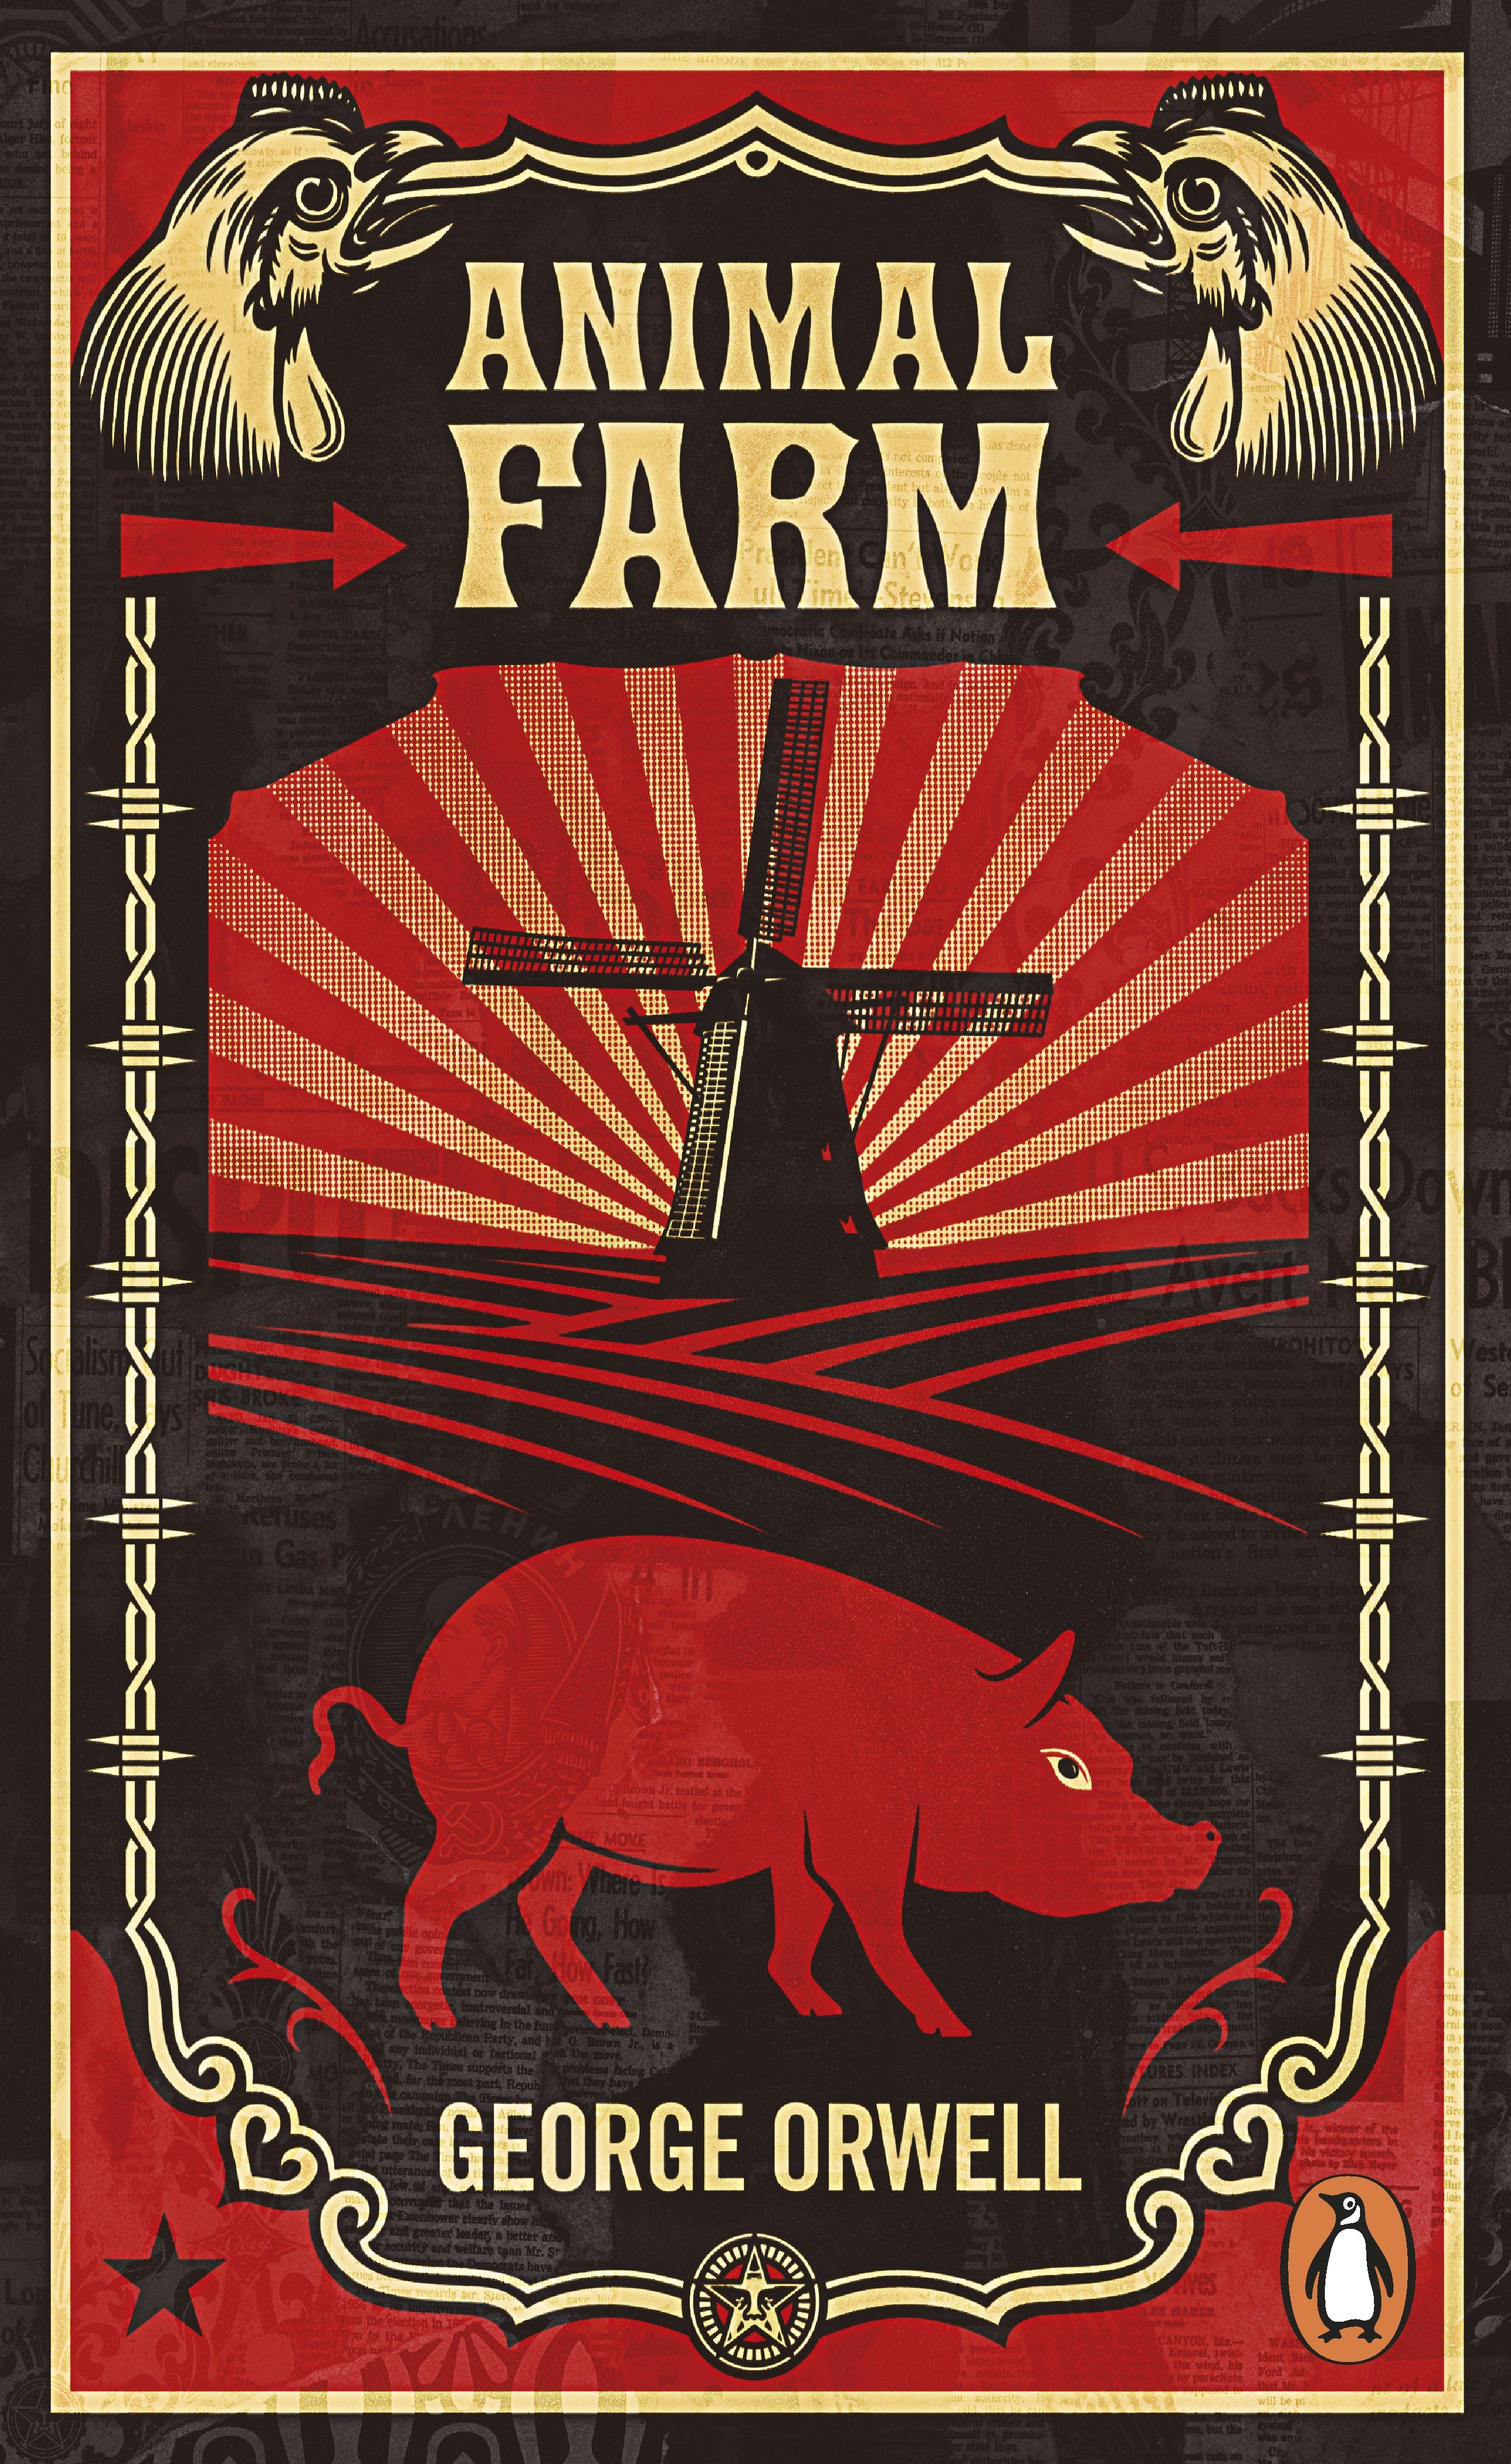 Book “Animal Farm” by George Orwell — July 3, 2008